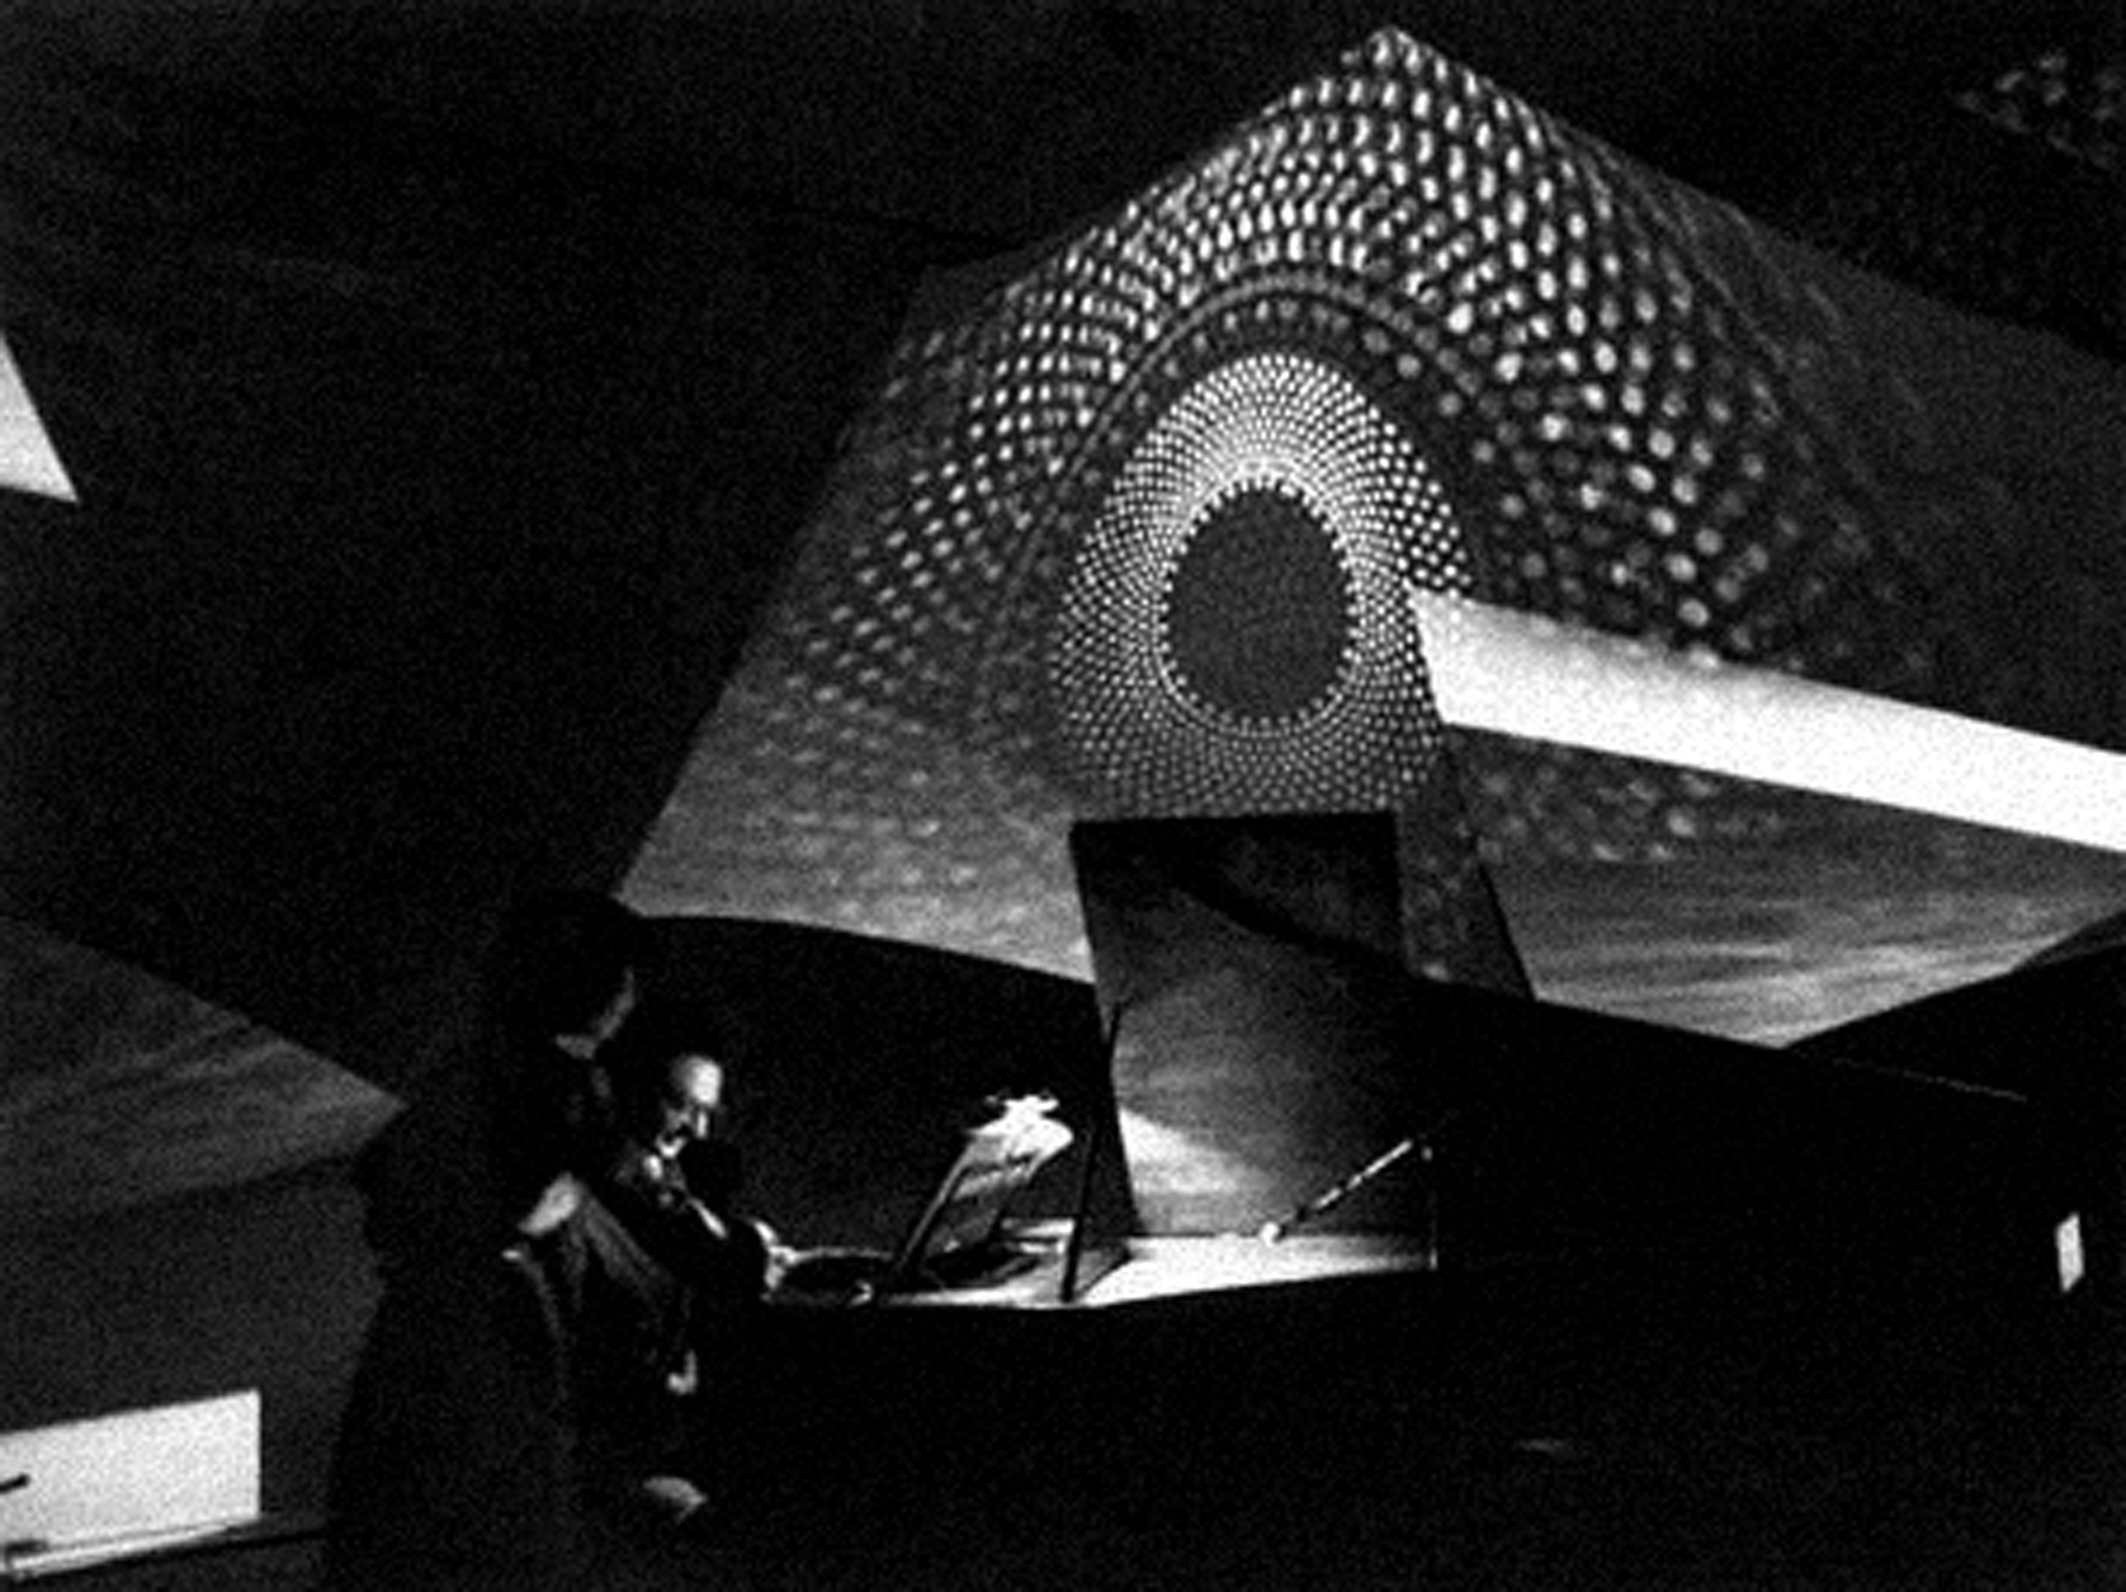 HPSCHD, Lejaren Hiller and John Cage.  Foto live del 1969